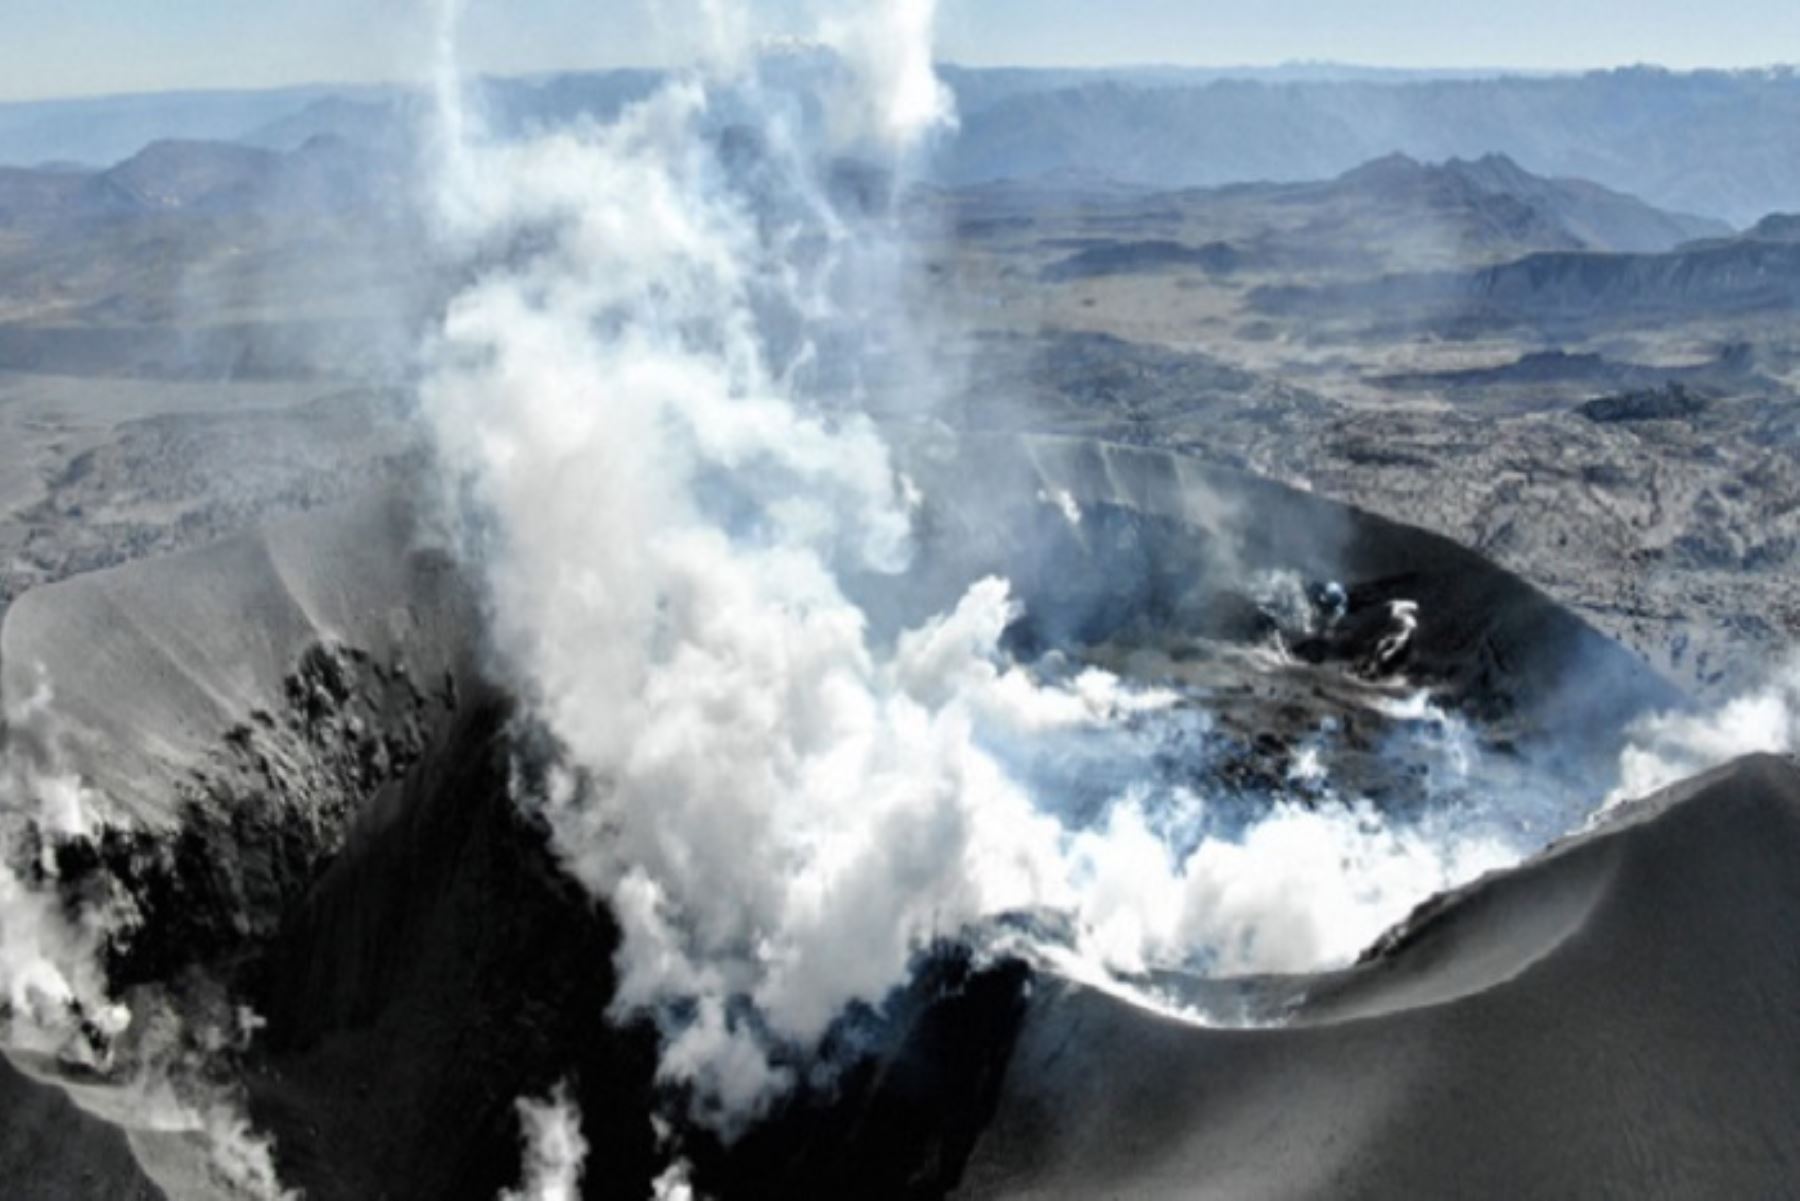 La sismicidad registrada en estos días forma parte de un proceso normal en un volcán en erupción. Foto: Ingemmet.